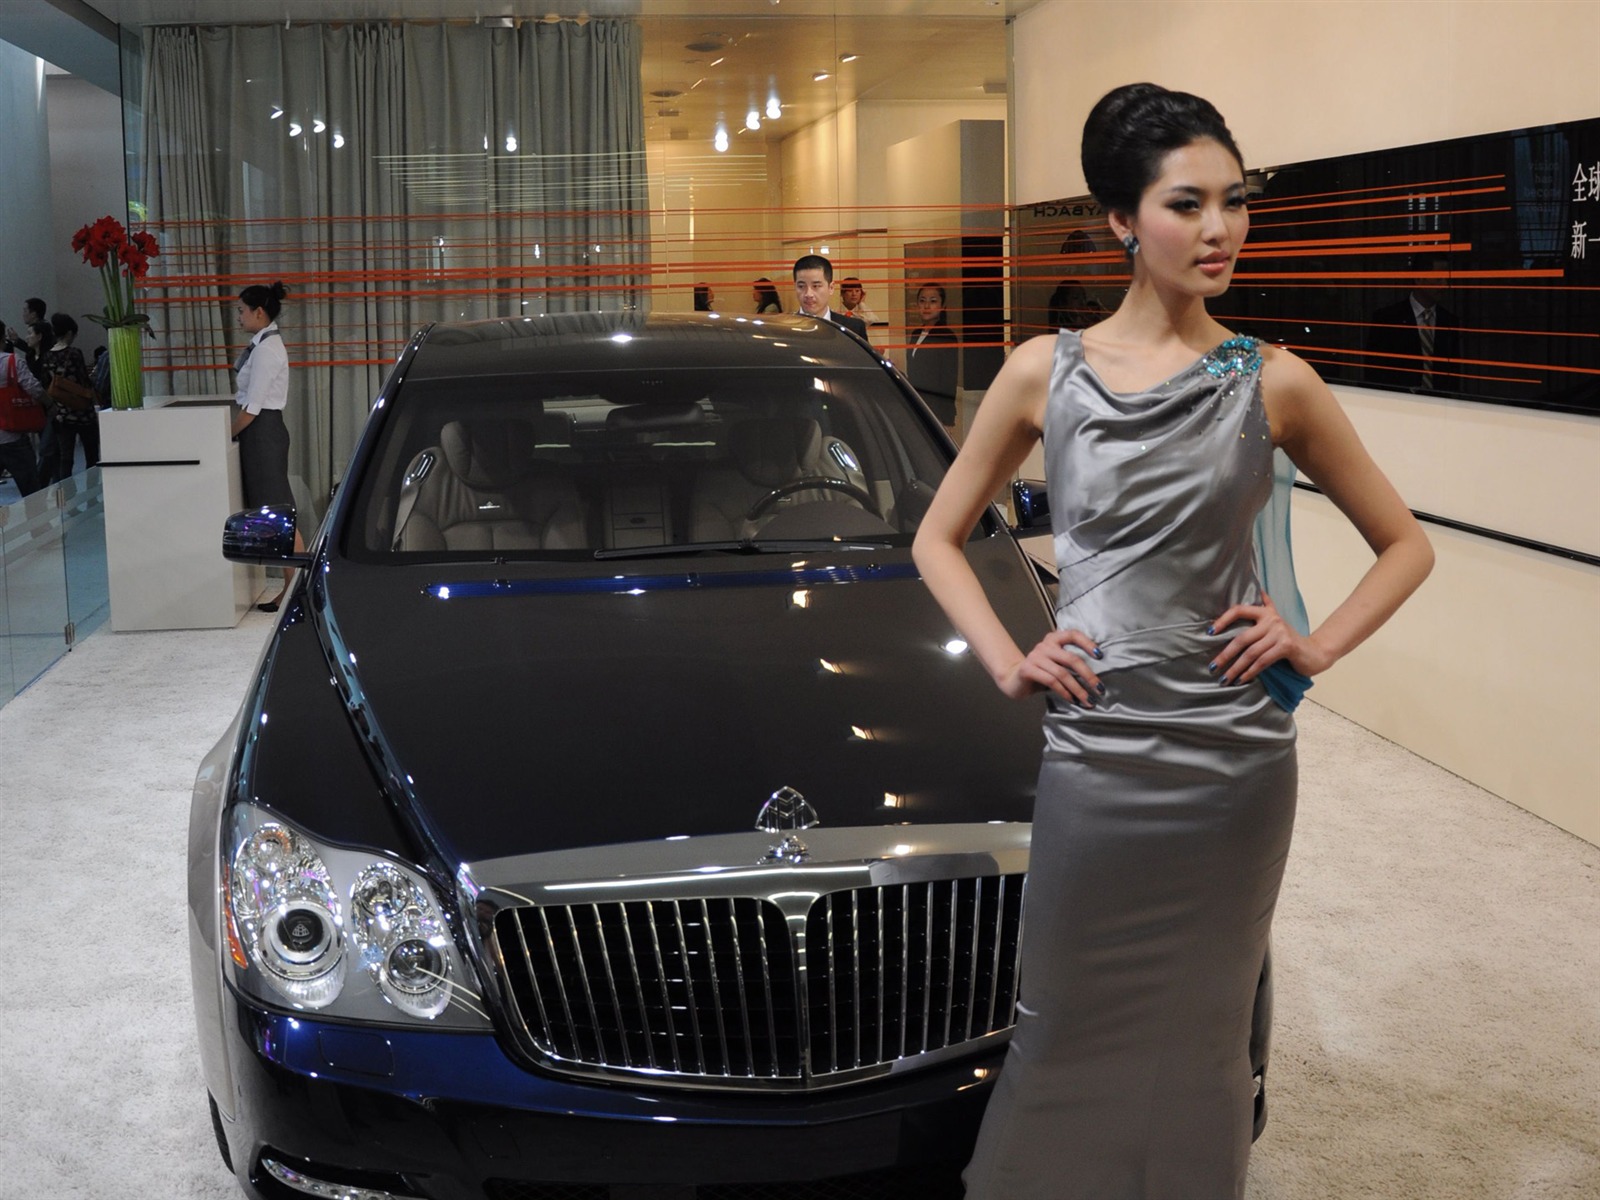 2010 Beijing International Auto Show (bemicoo works) #7 - 1600x1200